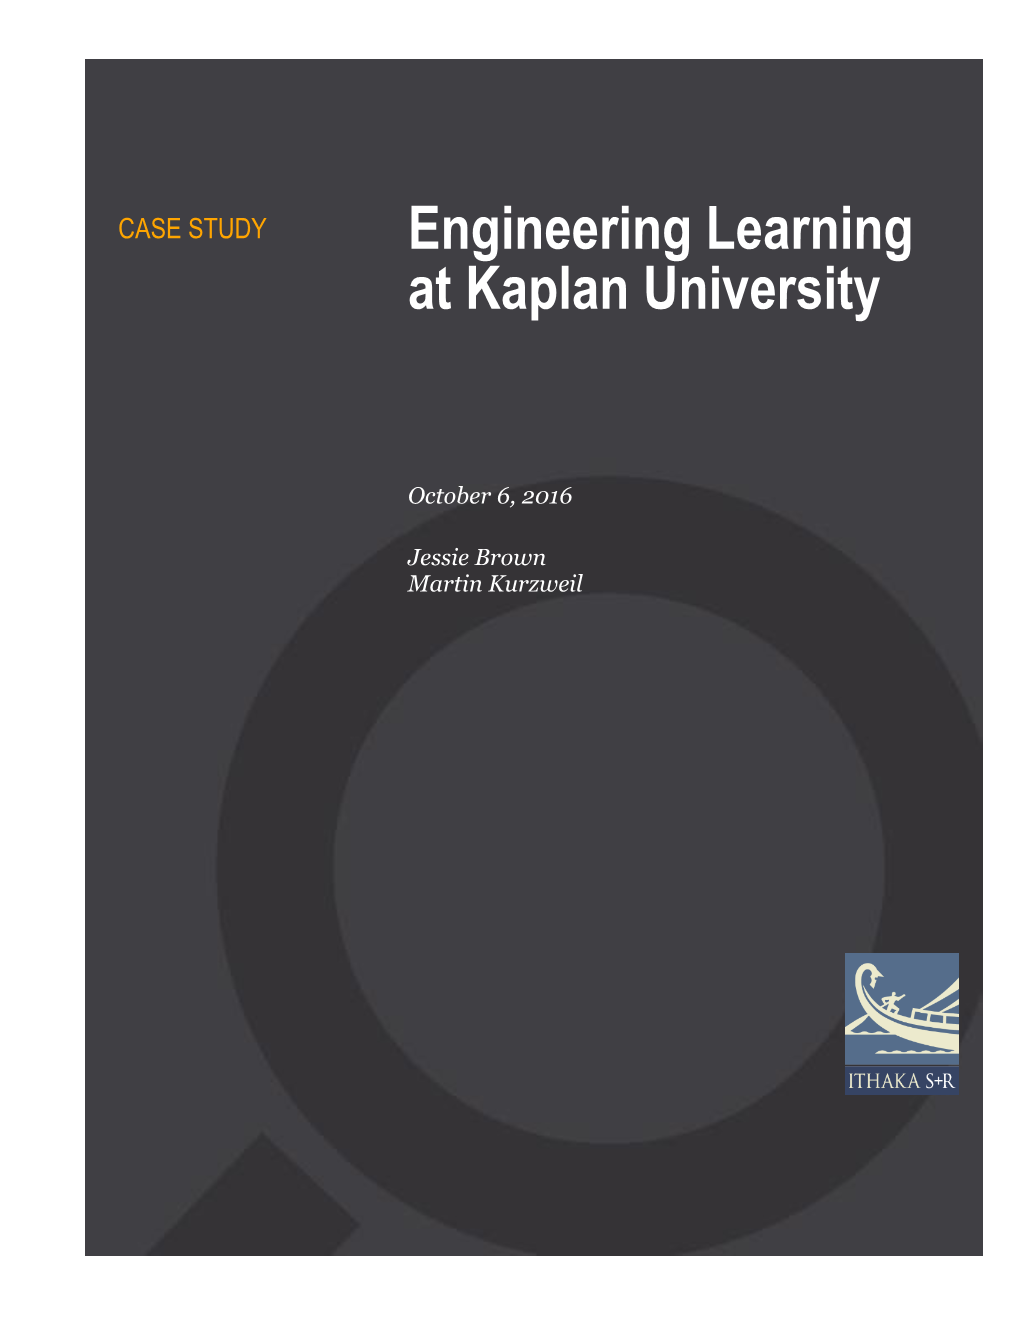 Engineering Learning at Kaplan University